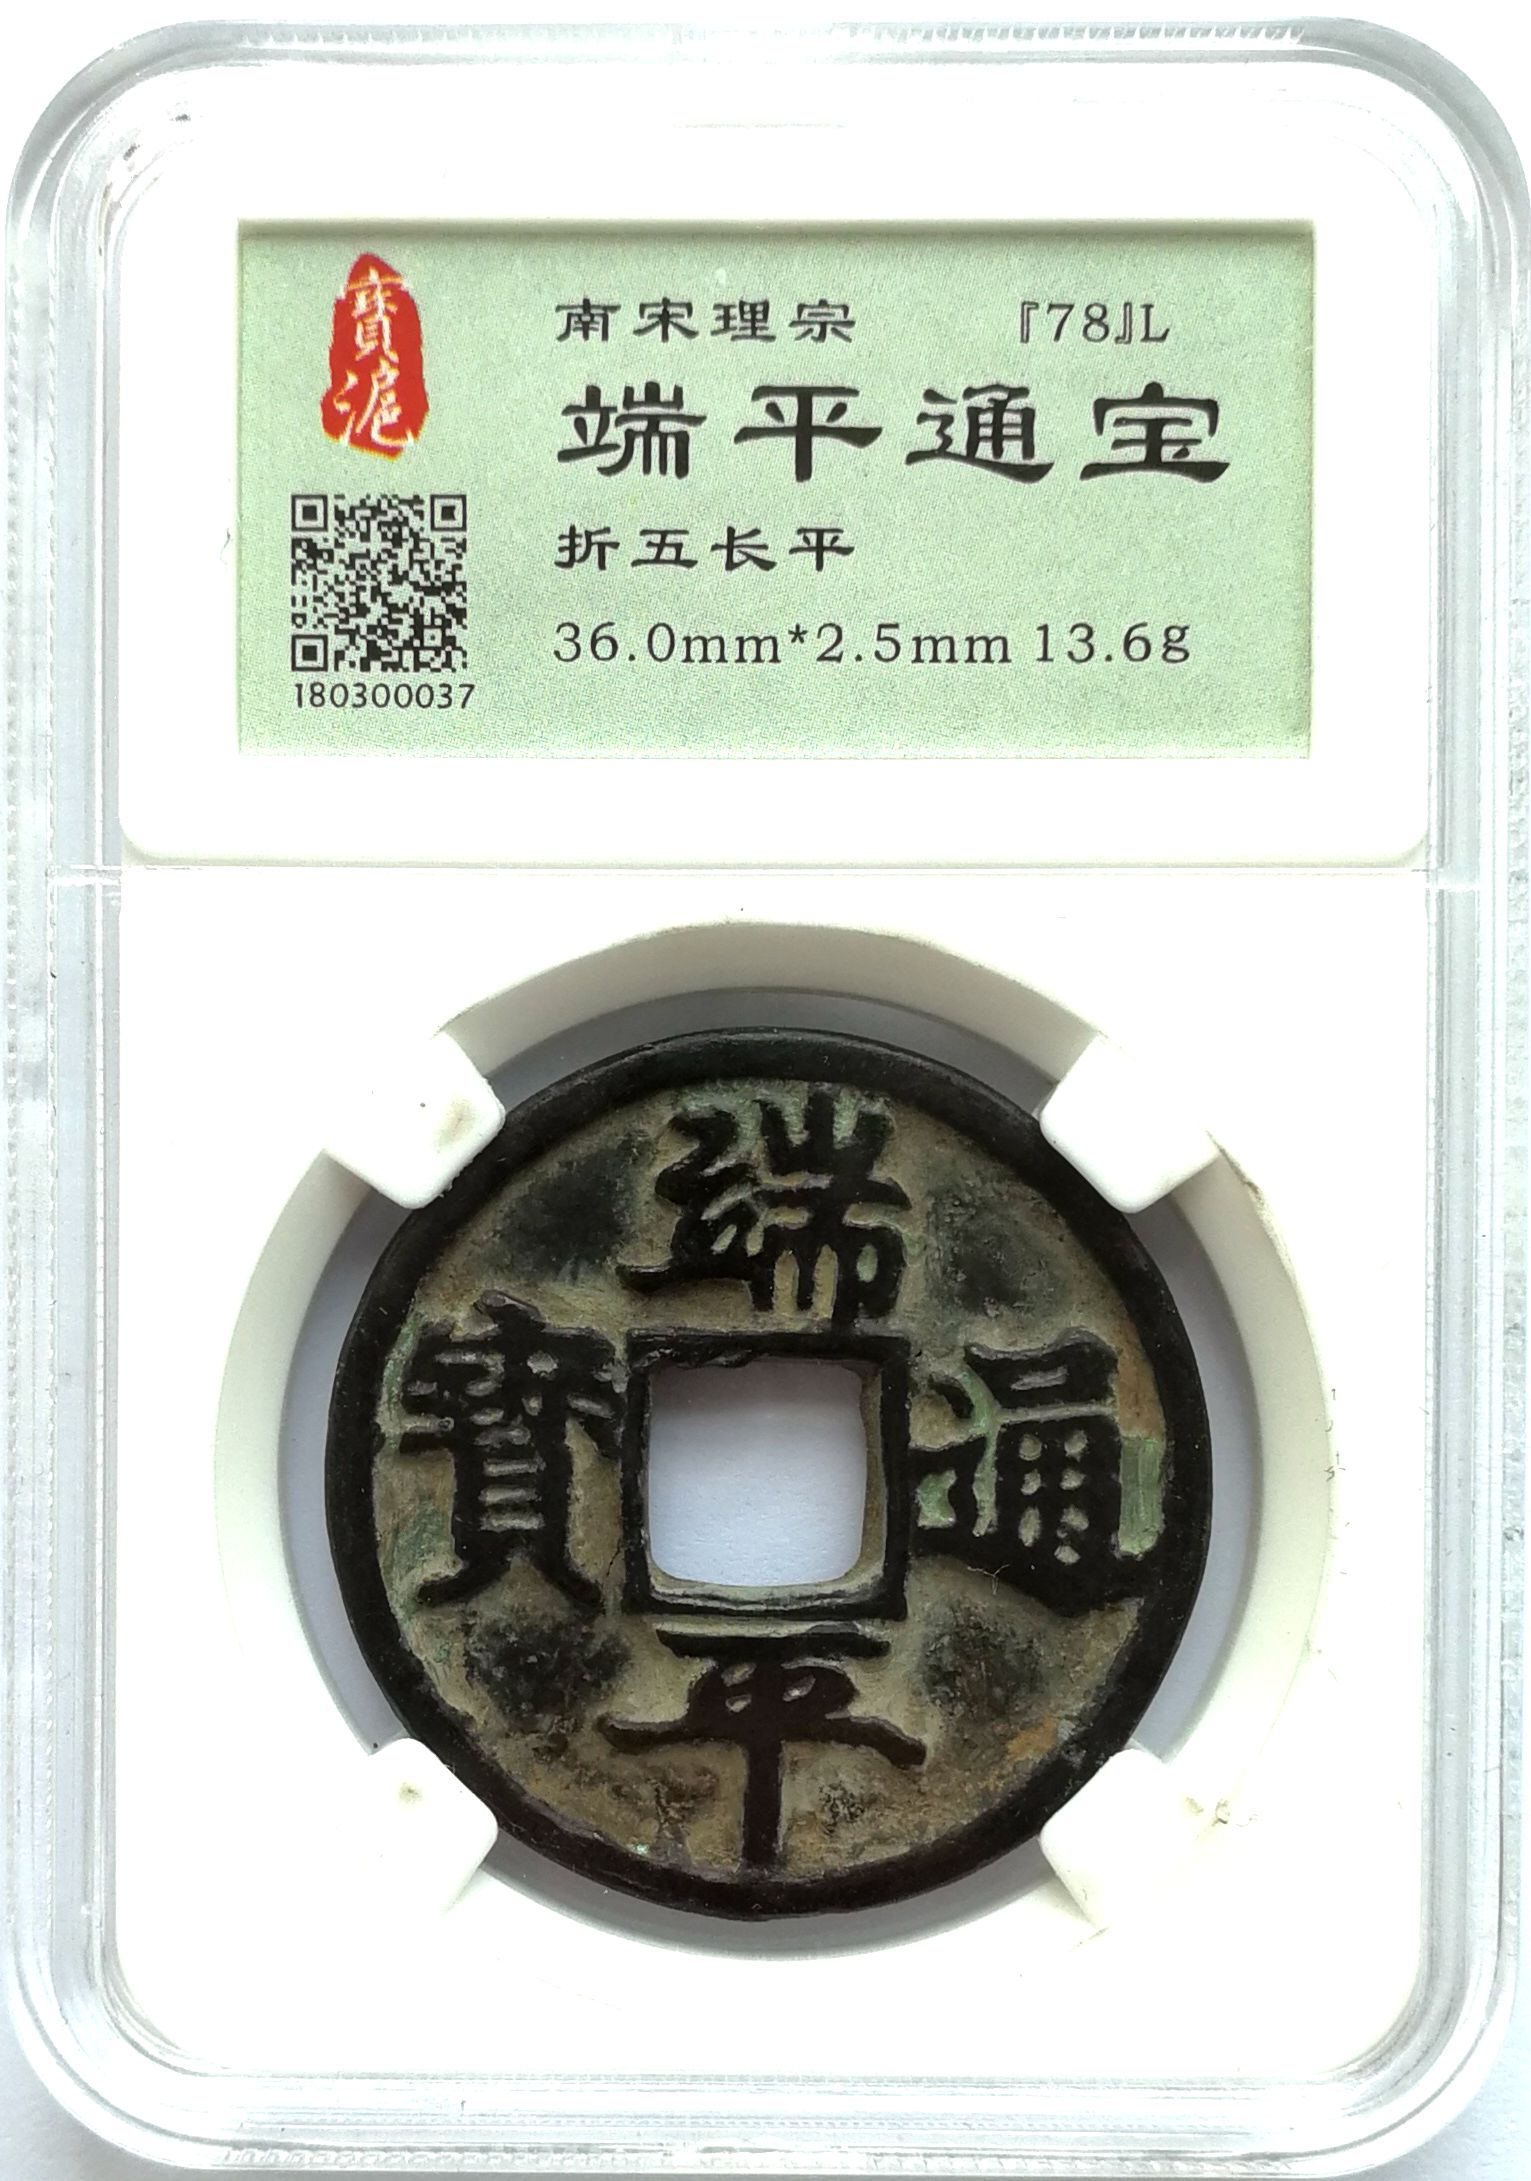 K3051, Duan-Ping Tong-Bao 5 cash Coin, South Sung Dynasty AD 1234, China Grade Box